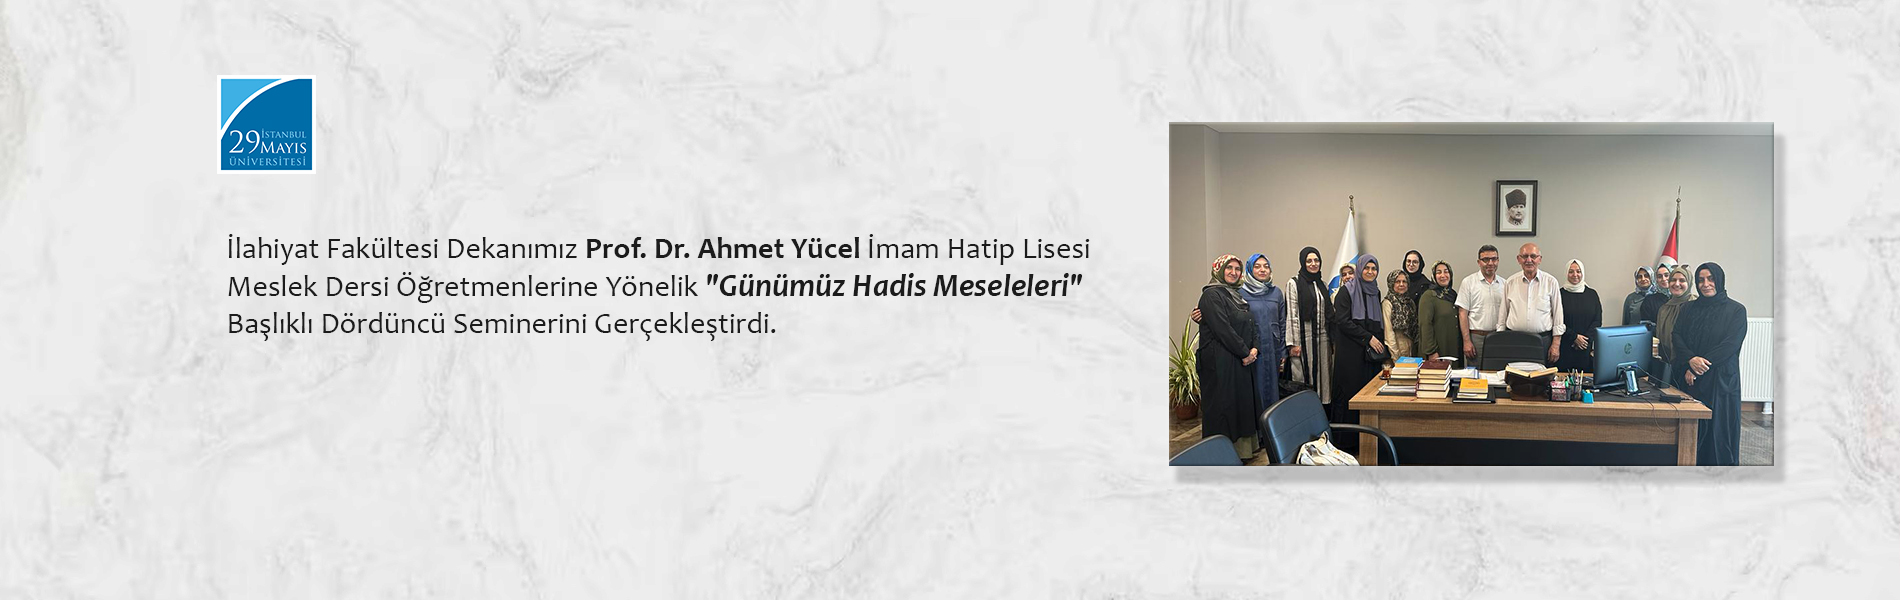 Prof. Dr. Ahmet Yücel İmam Hatip Lisesi Meslek Dersi Öğretmenlerine Yönelik "Günümüz Hadis Meseleleri" Başlıklı Dördüncü Seminerini Gerçekleştirdi